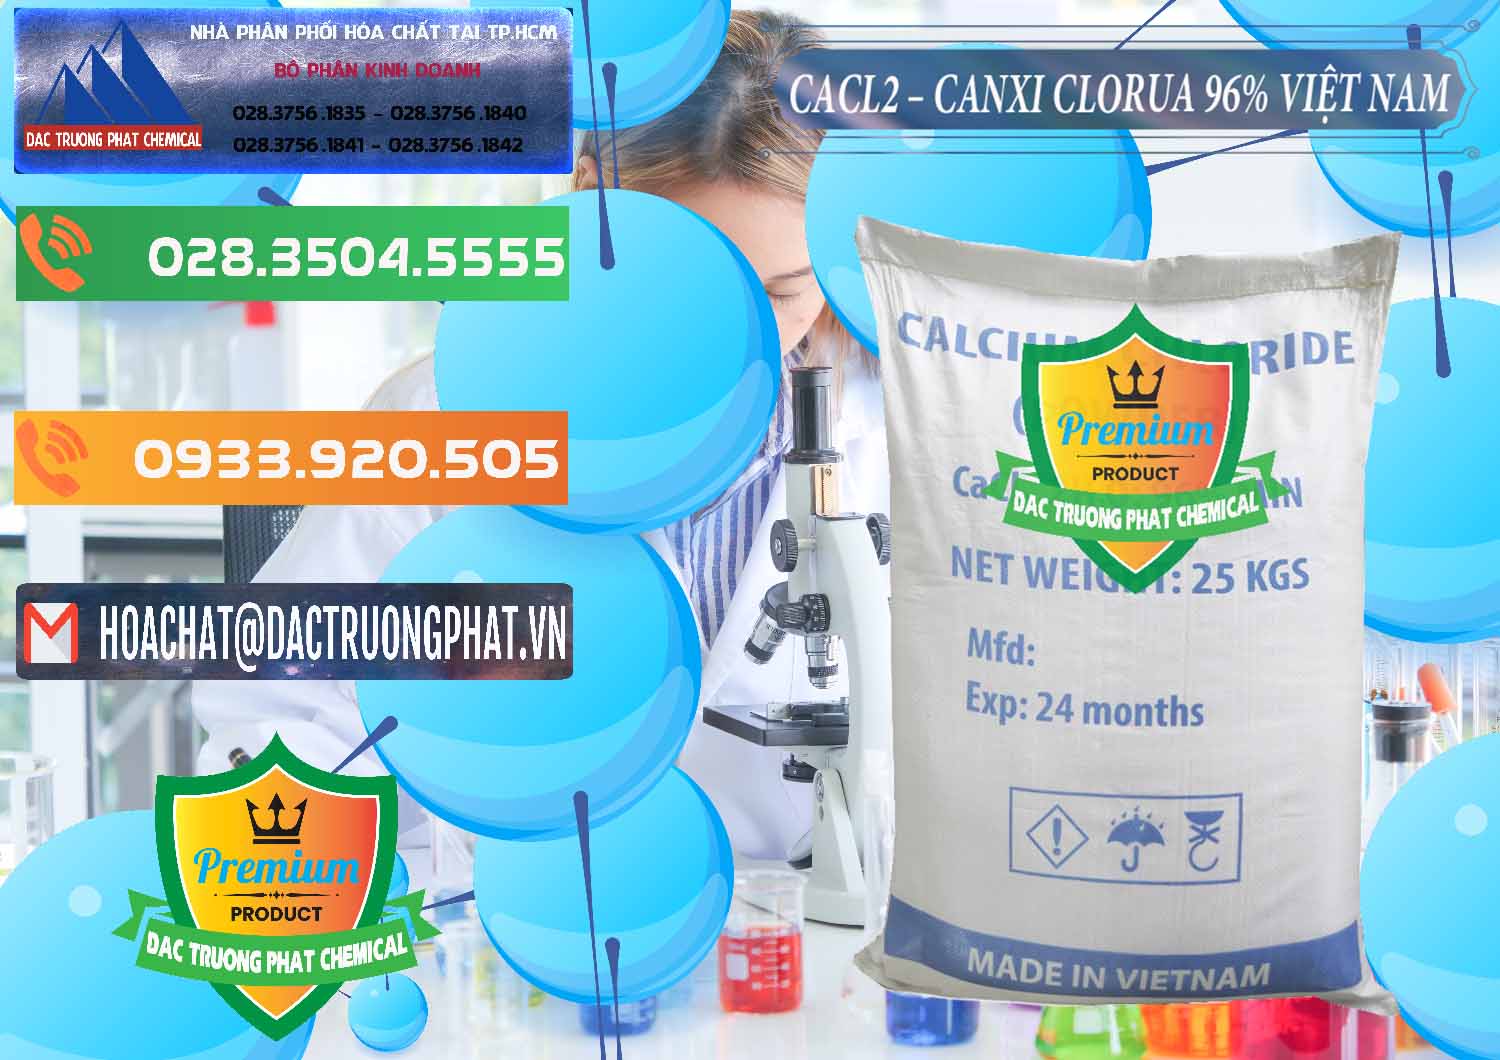 Cty chuyên cung cấp ( bán ) CaCl2 – Canxi Clorua 96% Việt Nam - 0236 - Nhà phân phối - cung ứng hóa chất tại TP.HCM - hoachatxulynuoc.com.vn